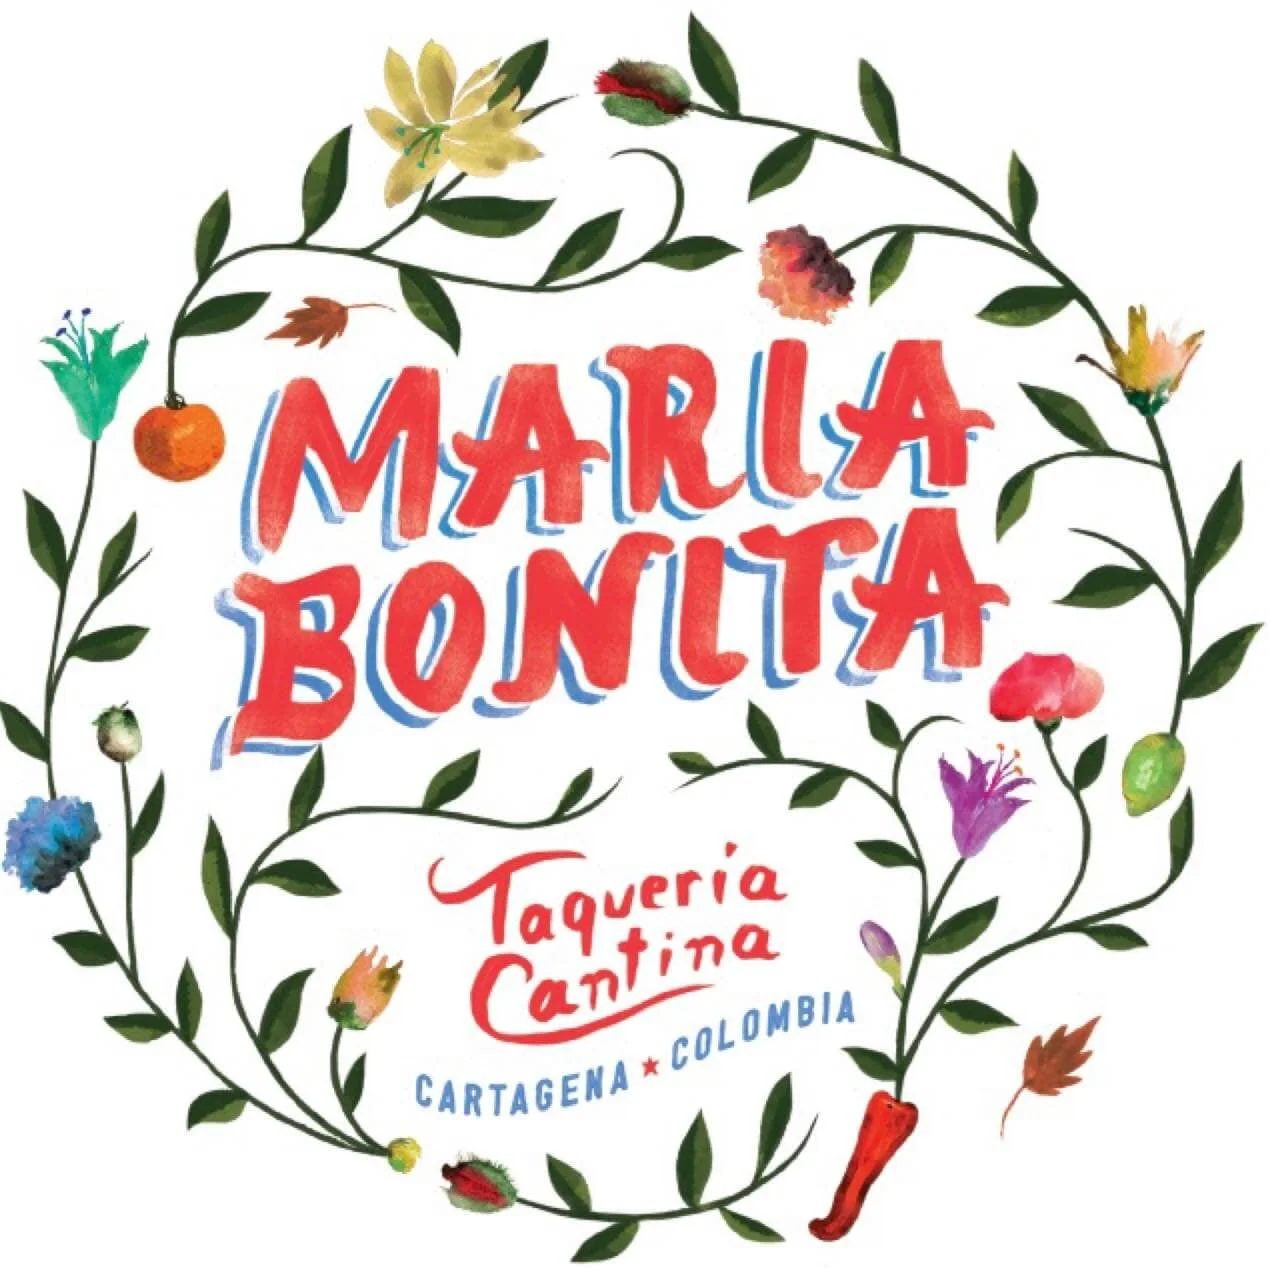 Restaurante-maria-bonita-taqueria-cantina-22890